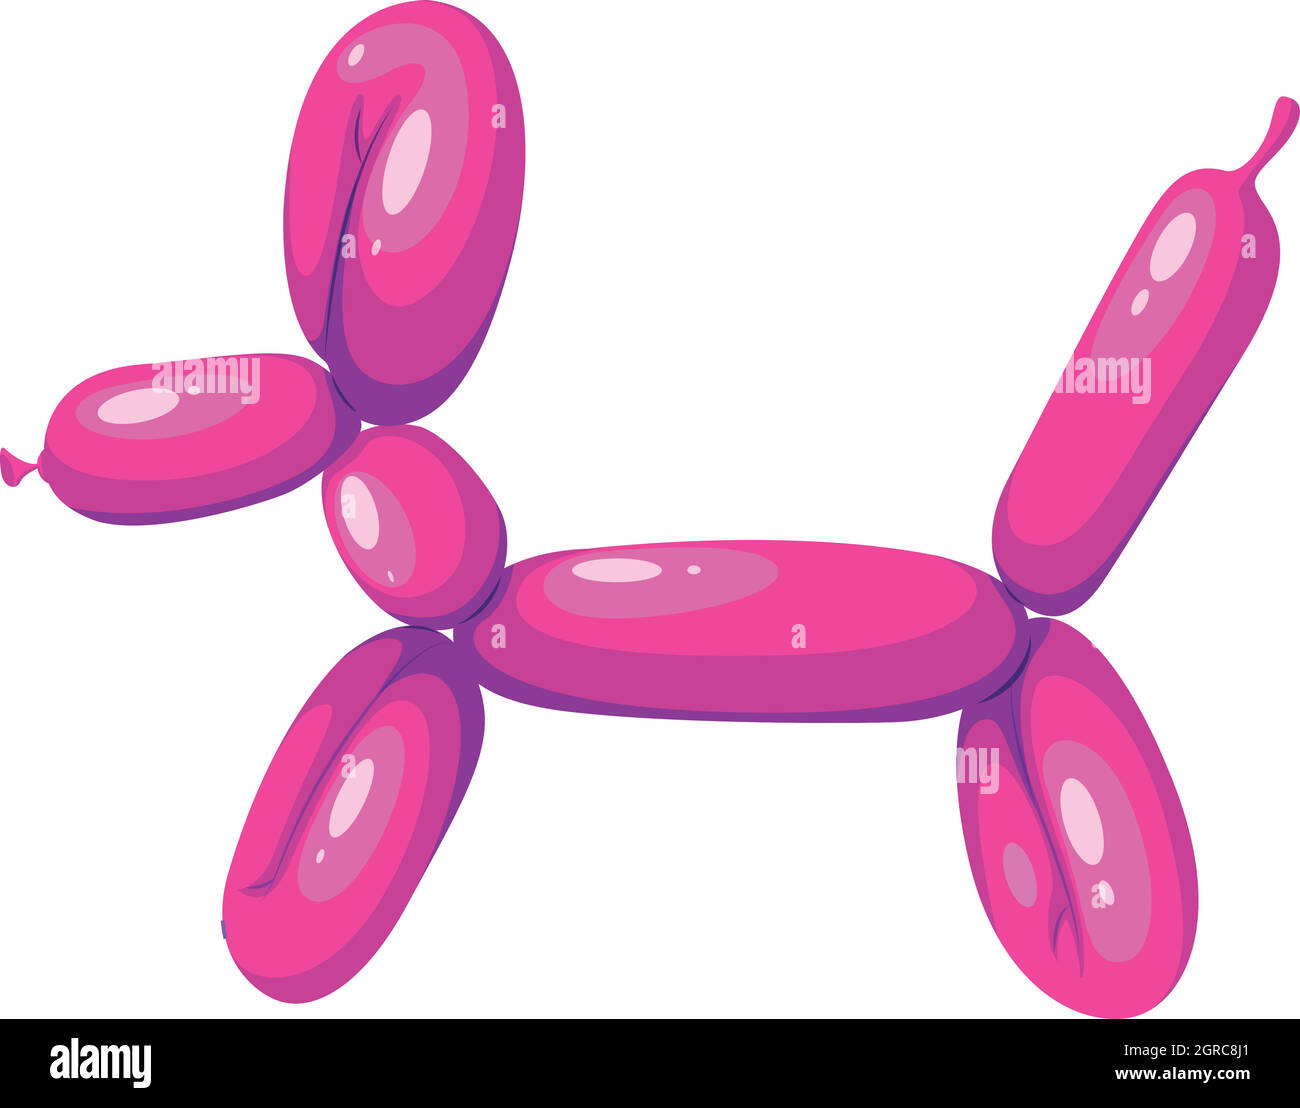 Palloncino a forma di cane di colore rosa Illustrazione Vettoriale